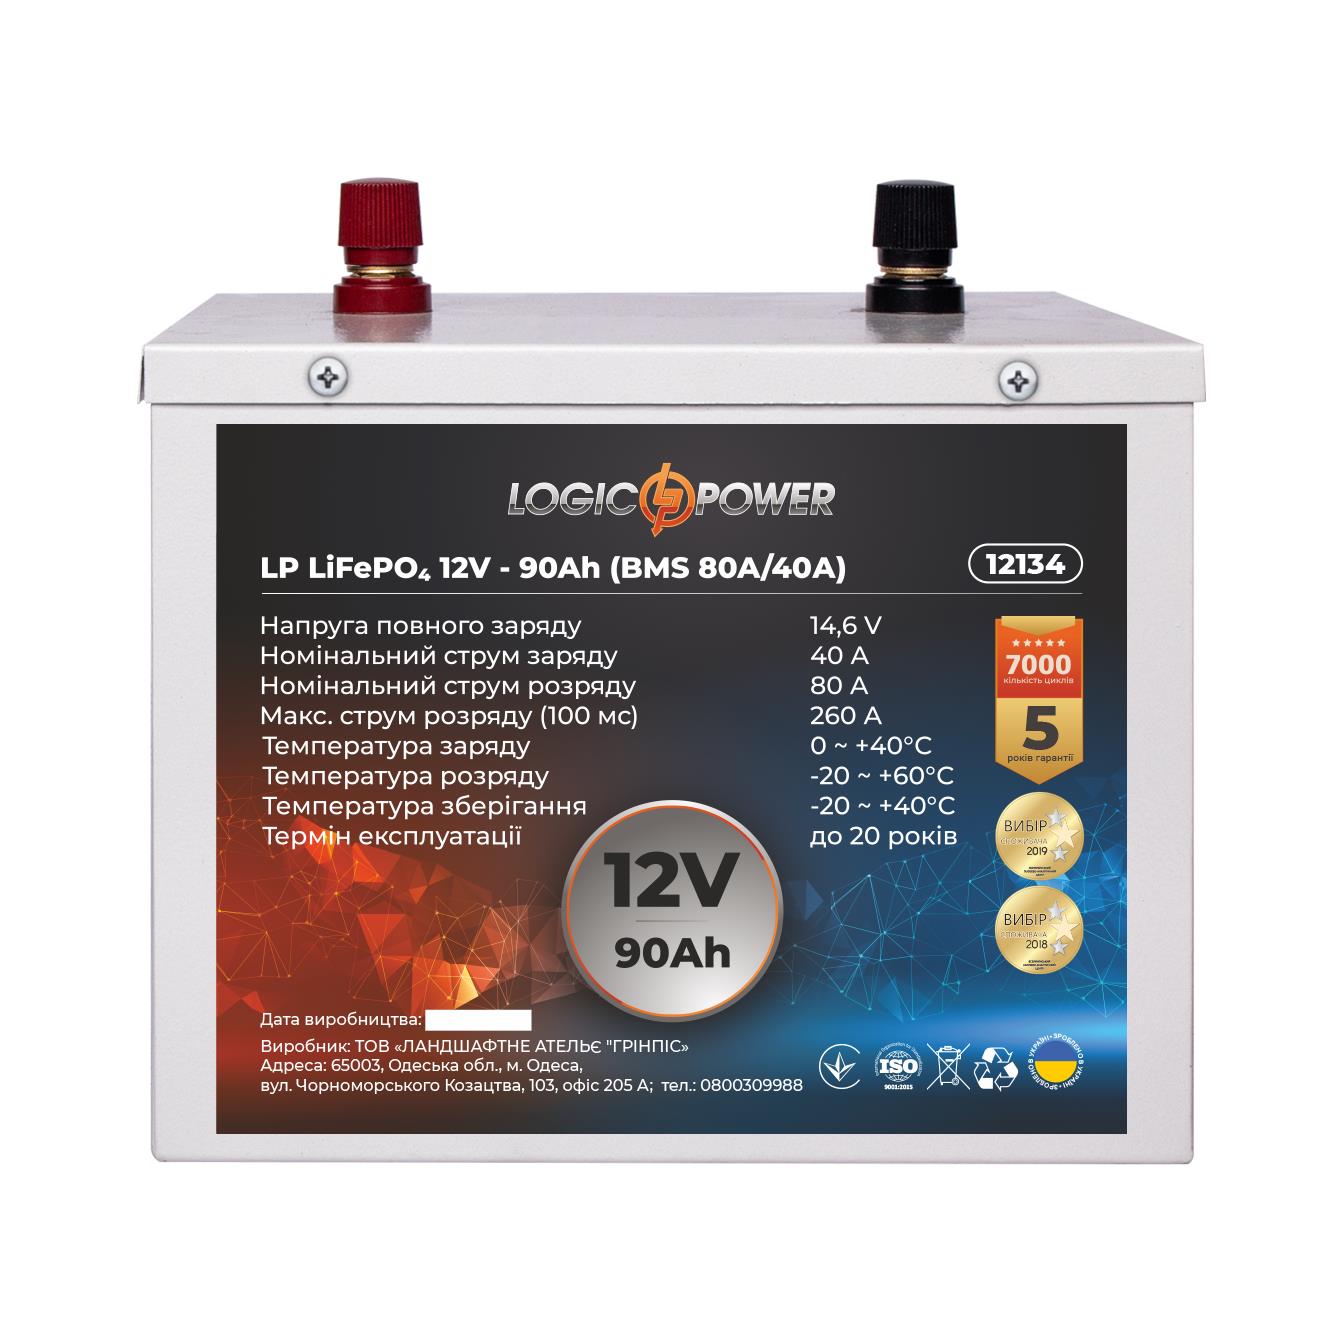 Акумулятор літій-залізо-фосфатний LogicPower LP LiFePO4 12V - 90 Ah (BMS 80A/40A) метал (12134) в Львові